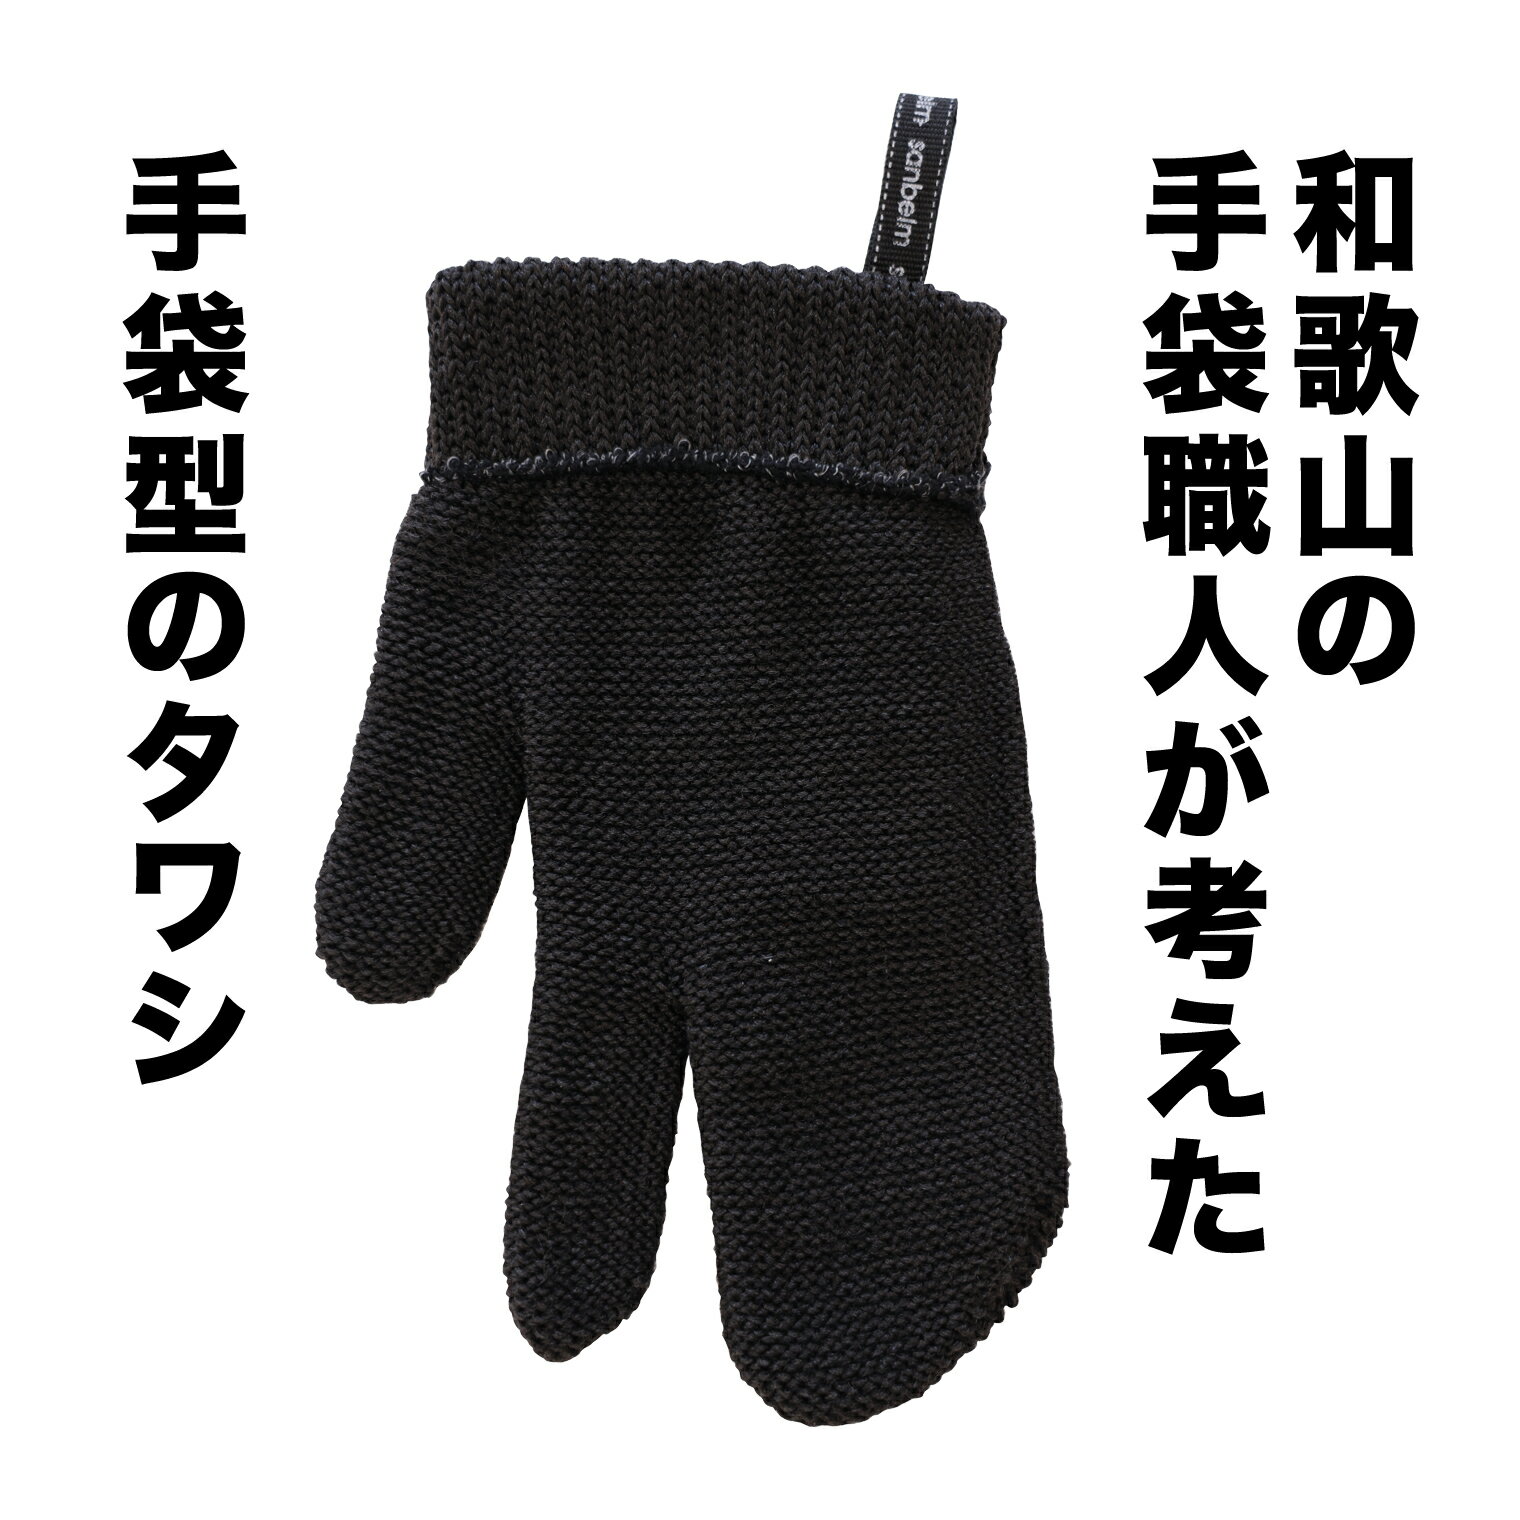 サンベルム (sanbelm) 手袋職人が考えた 和歌山生まれの手袋タワシ ブラック 042310